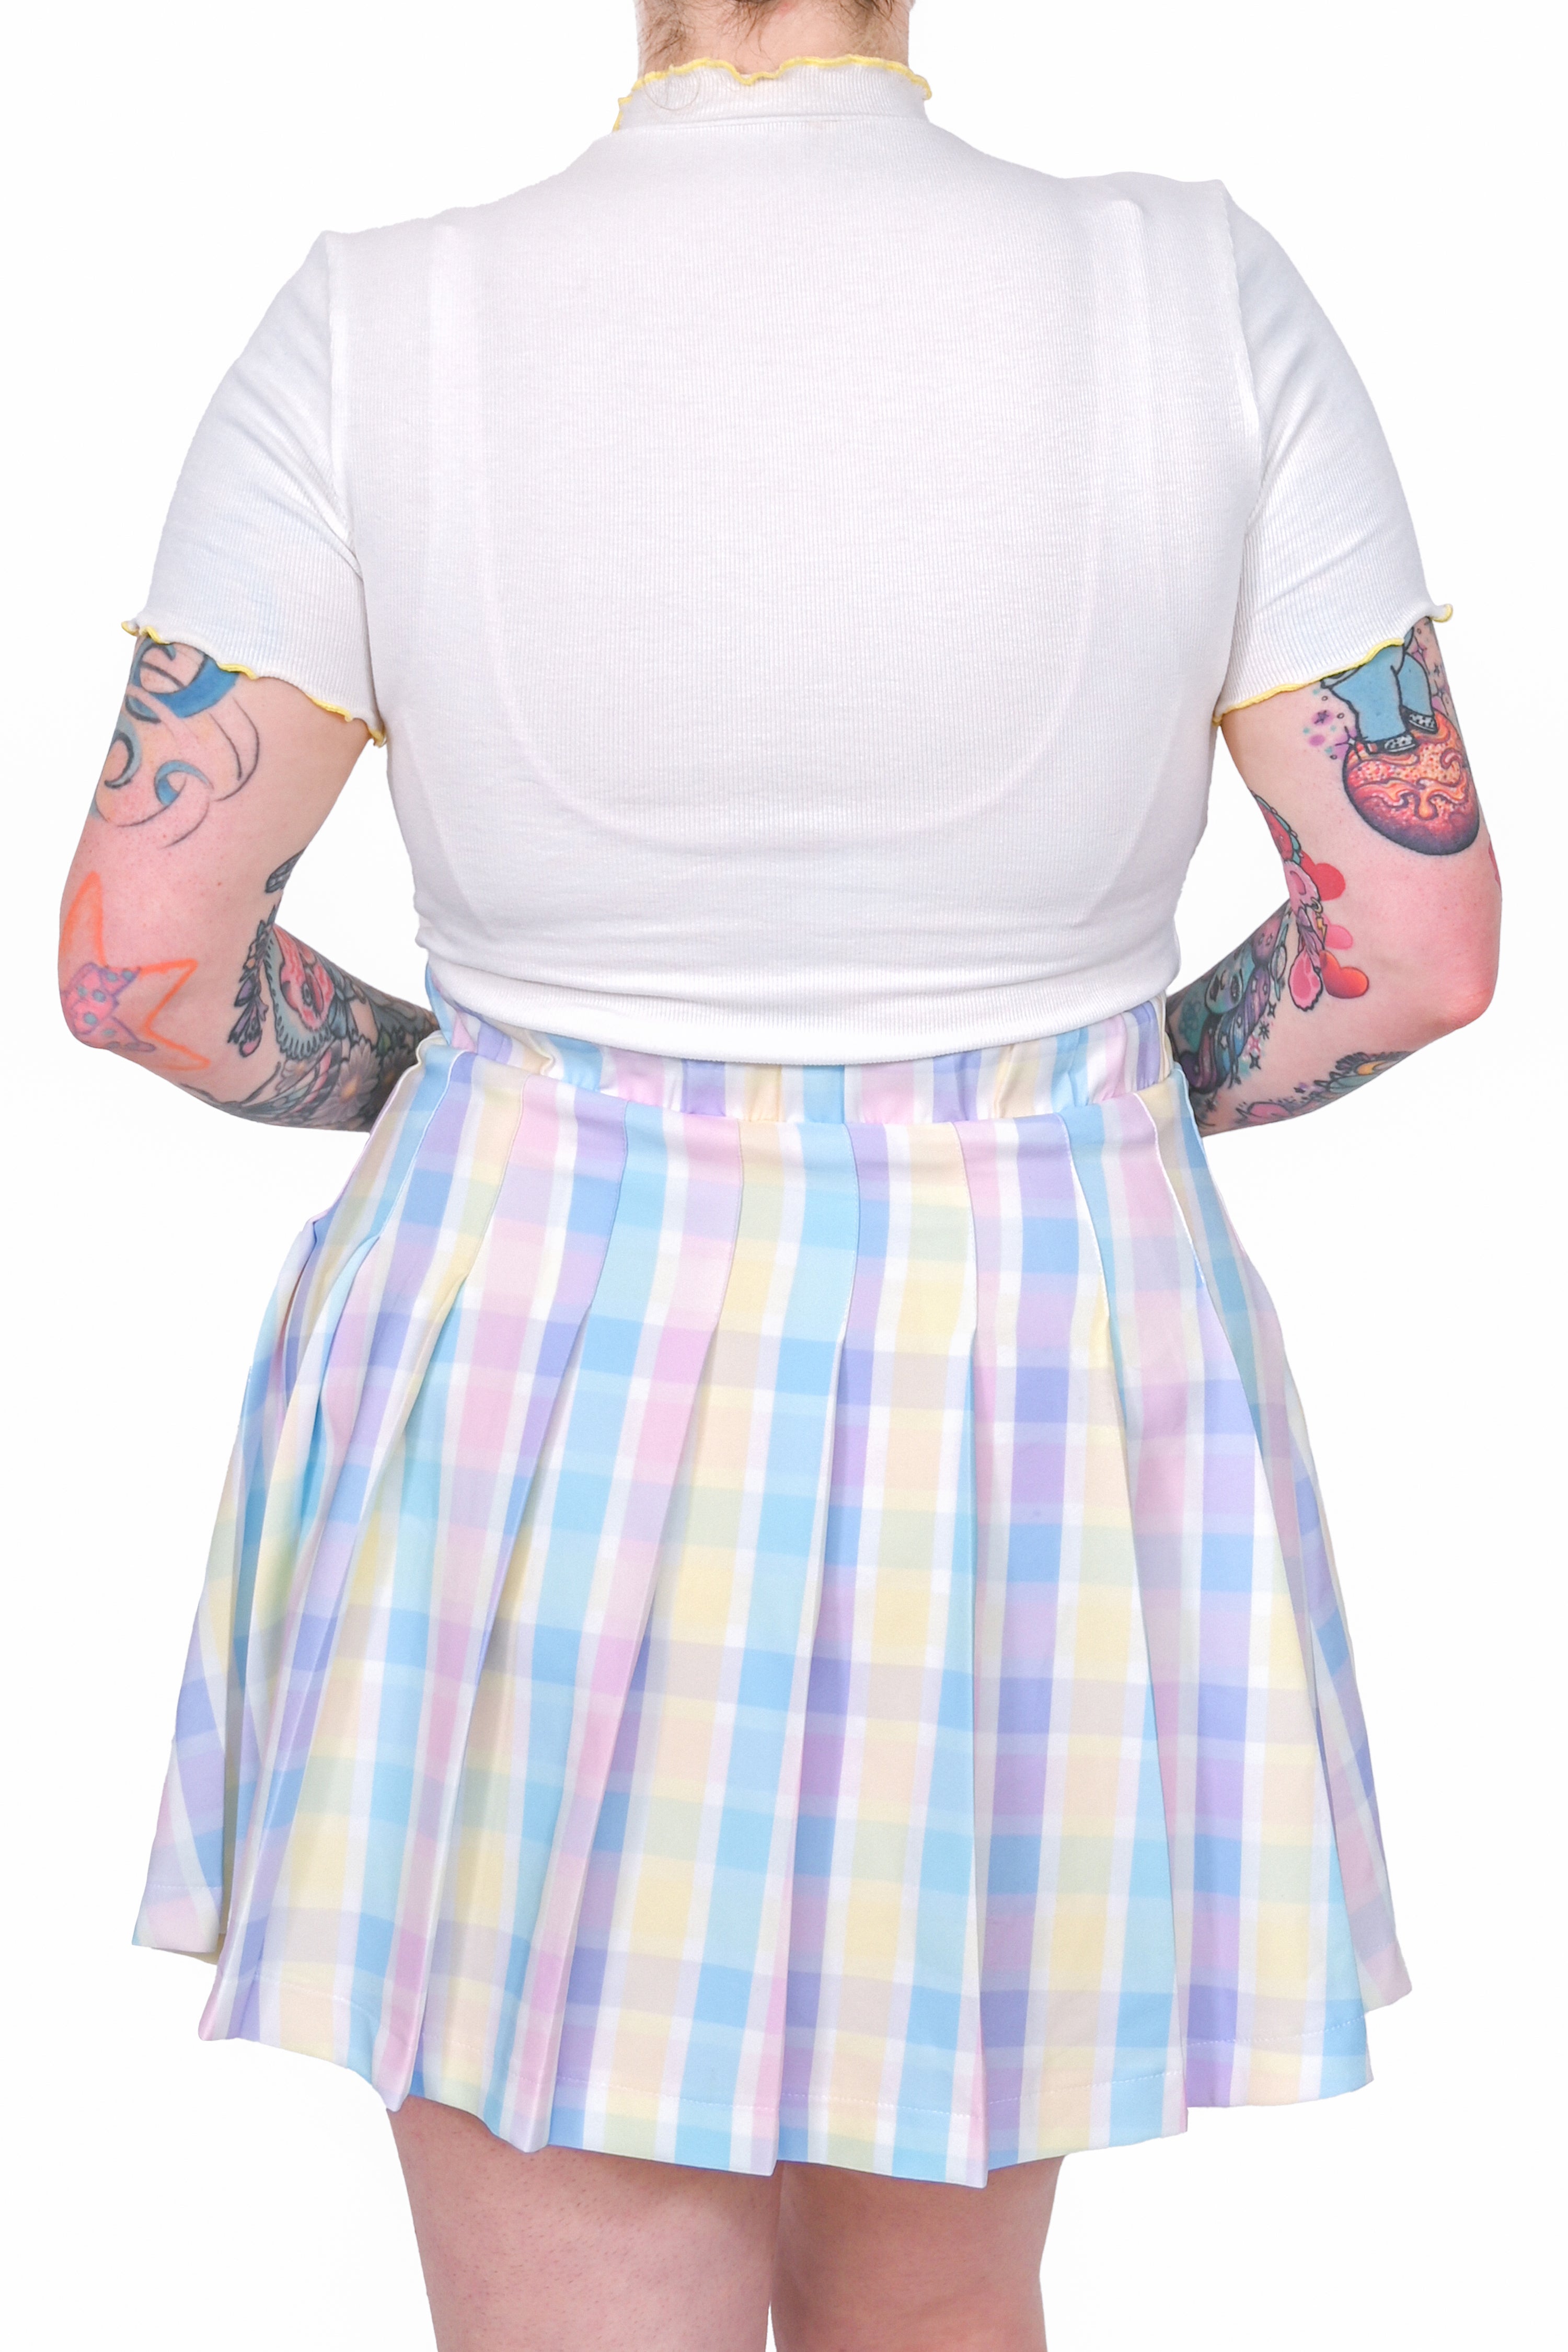 High-waisted Plaid Pleated Skirt – Kawaiifashion